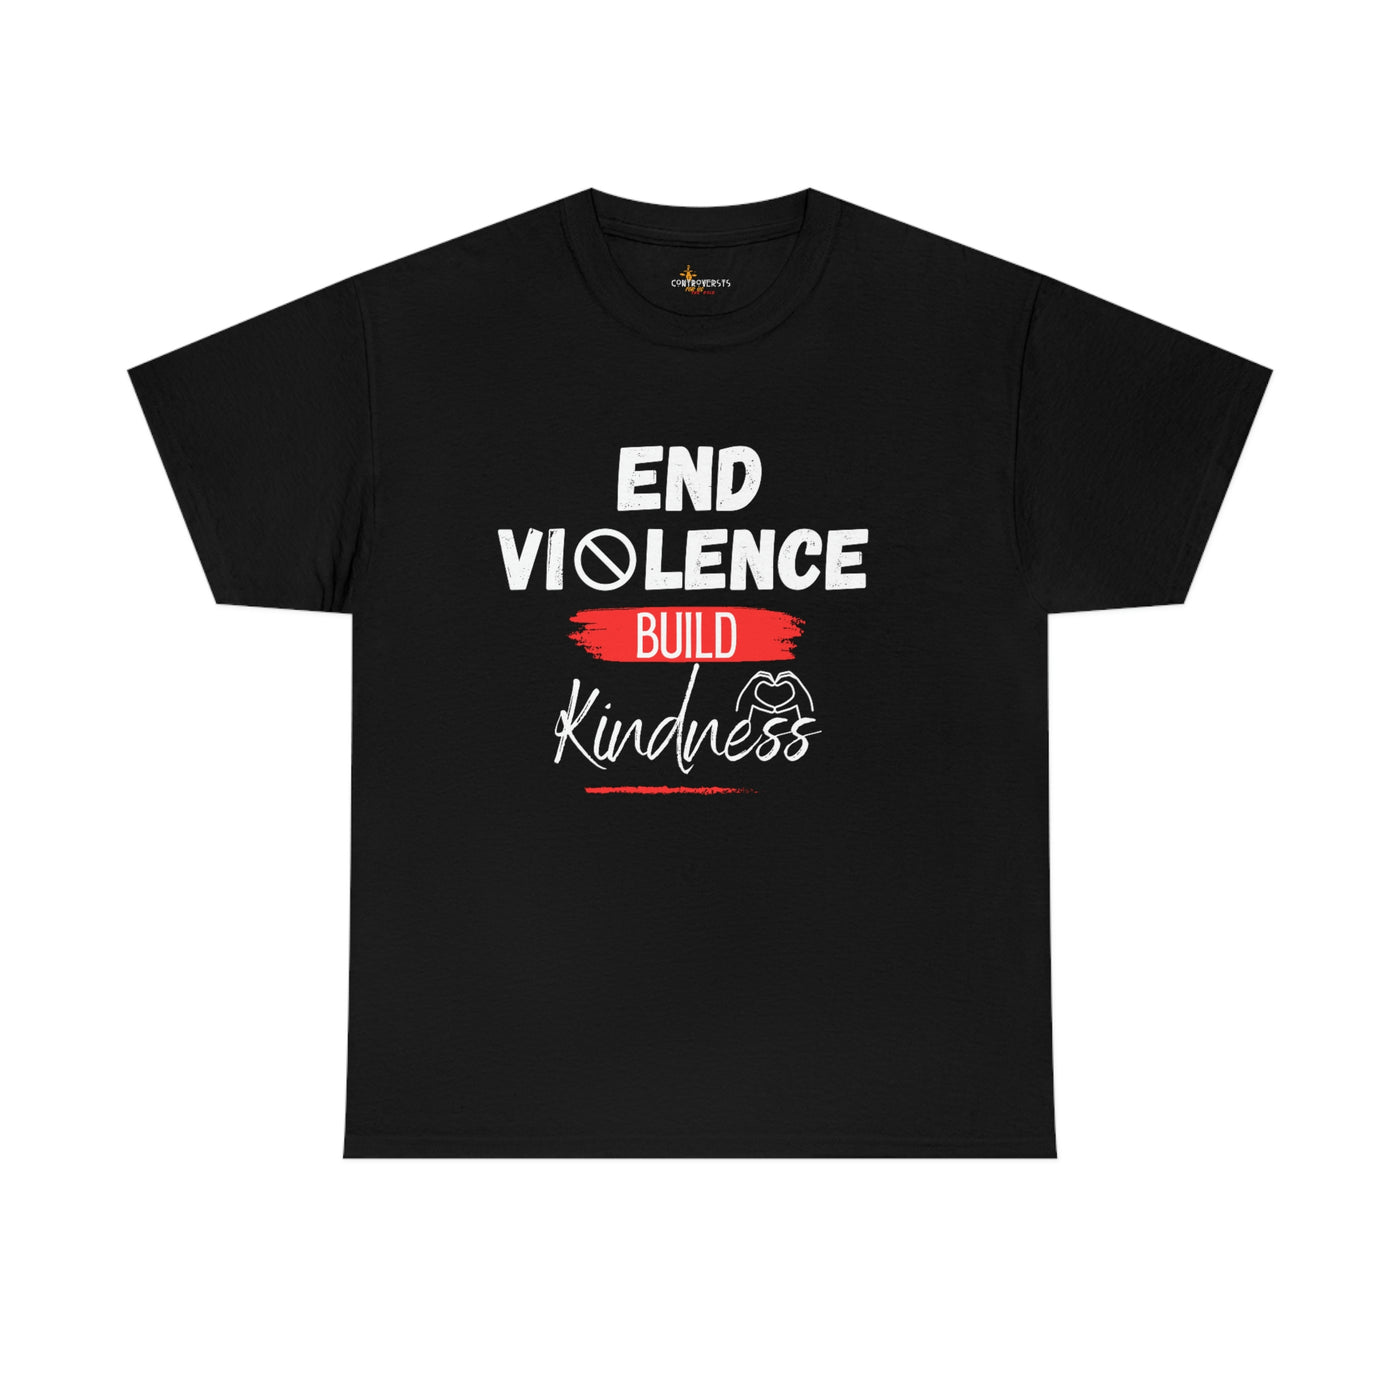 End Violence Build Kindness T-shirt